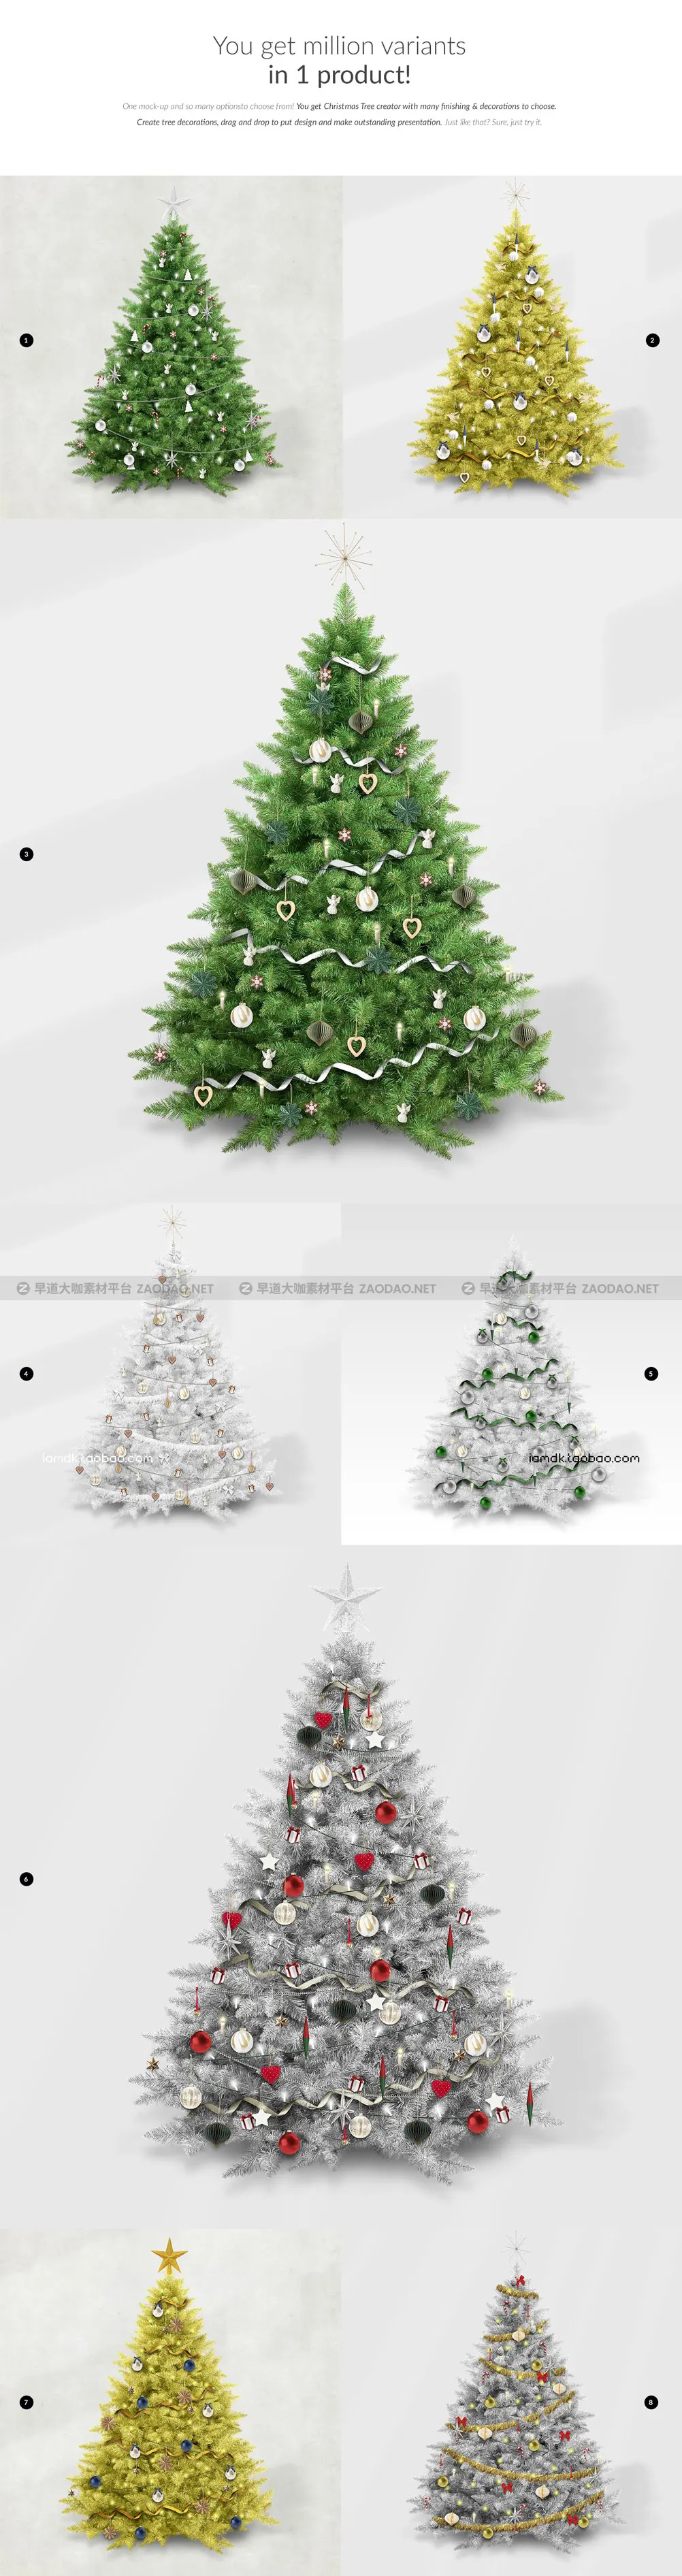 自定义圣诞节新年装饰圣诞树节日礼物Ps样机设计素材展示效果模板 Tree Creator Mock-up插图3